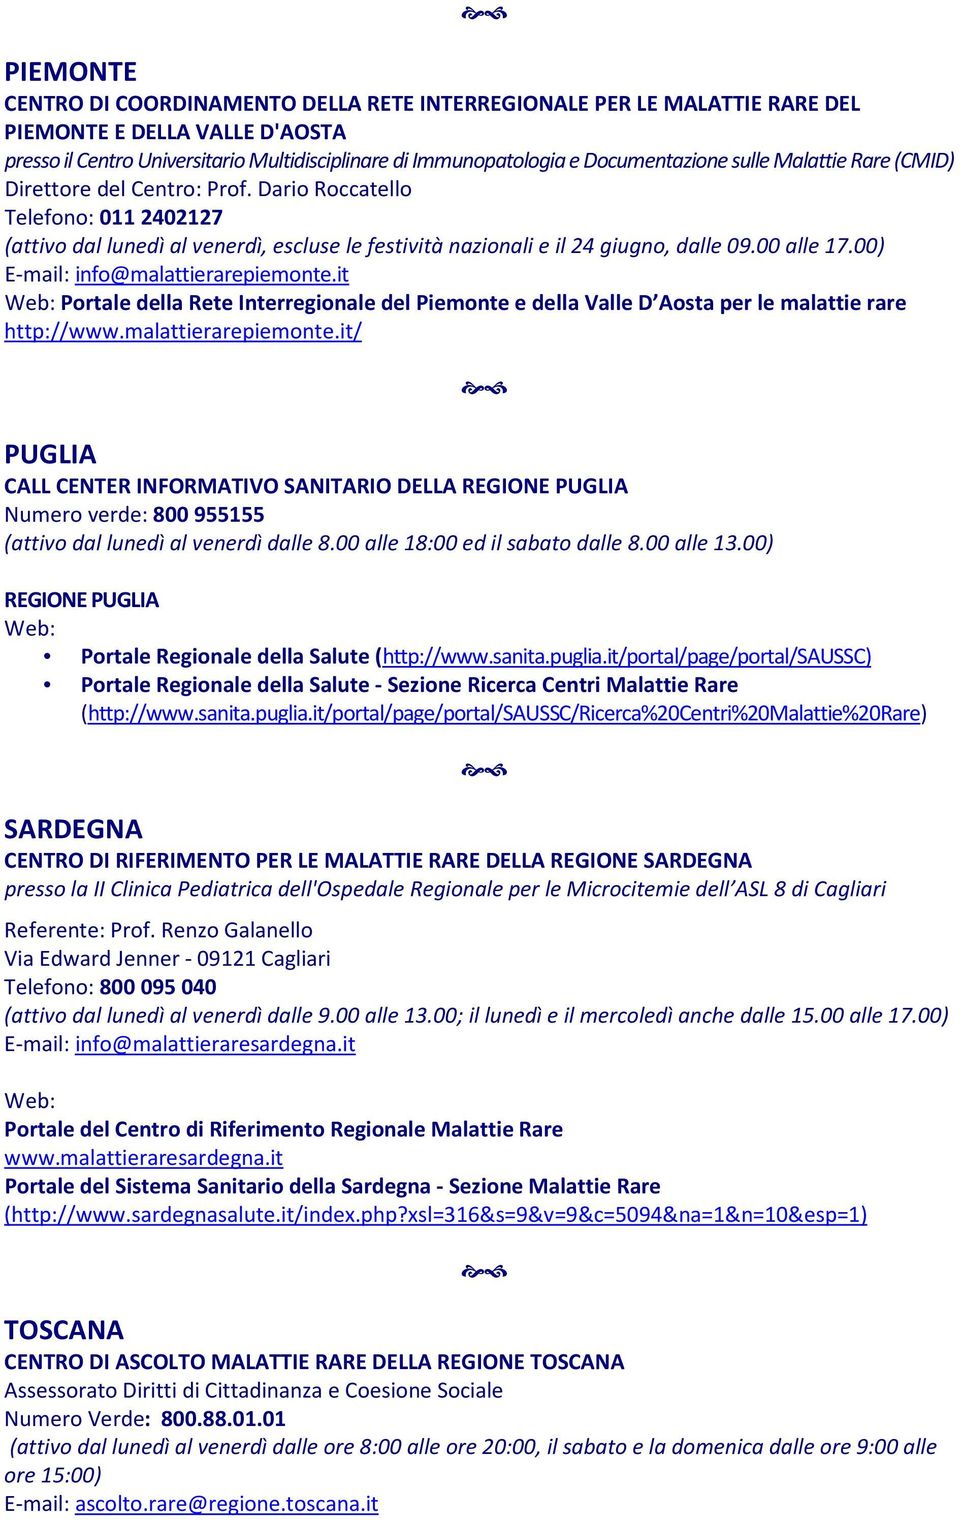 00) E-mail: info@malattierarepiemonte.it Portale della Rete Interregionale del Piemonte e della Valle D Aosta per le malattie rare http://www.malattierarepiemonte.it/ PUGLIA CALL CENTER INFORMATIVO SANITARIO DELLA REGIONE PUGLIA Numero verde: 800 955155 (attivo dal lunedì al venerdì dalle 8.